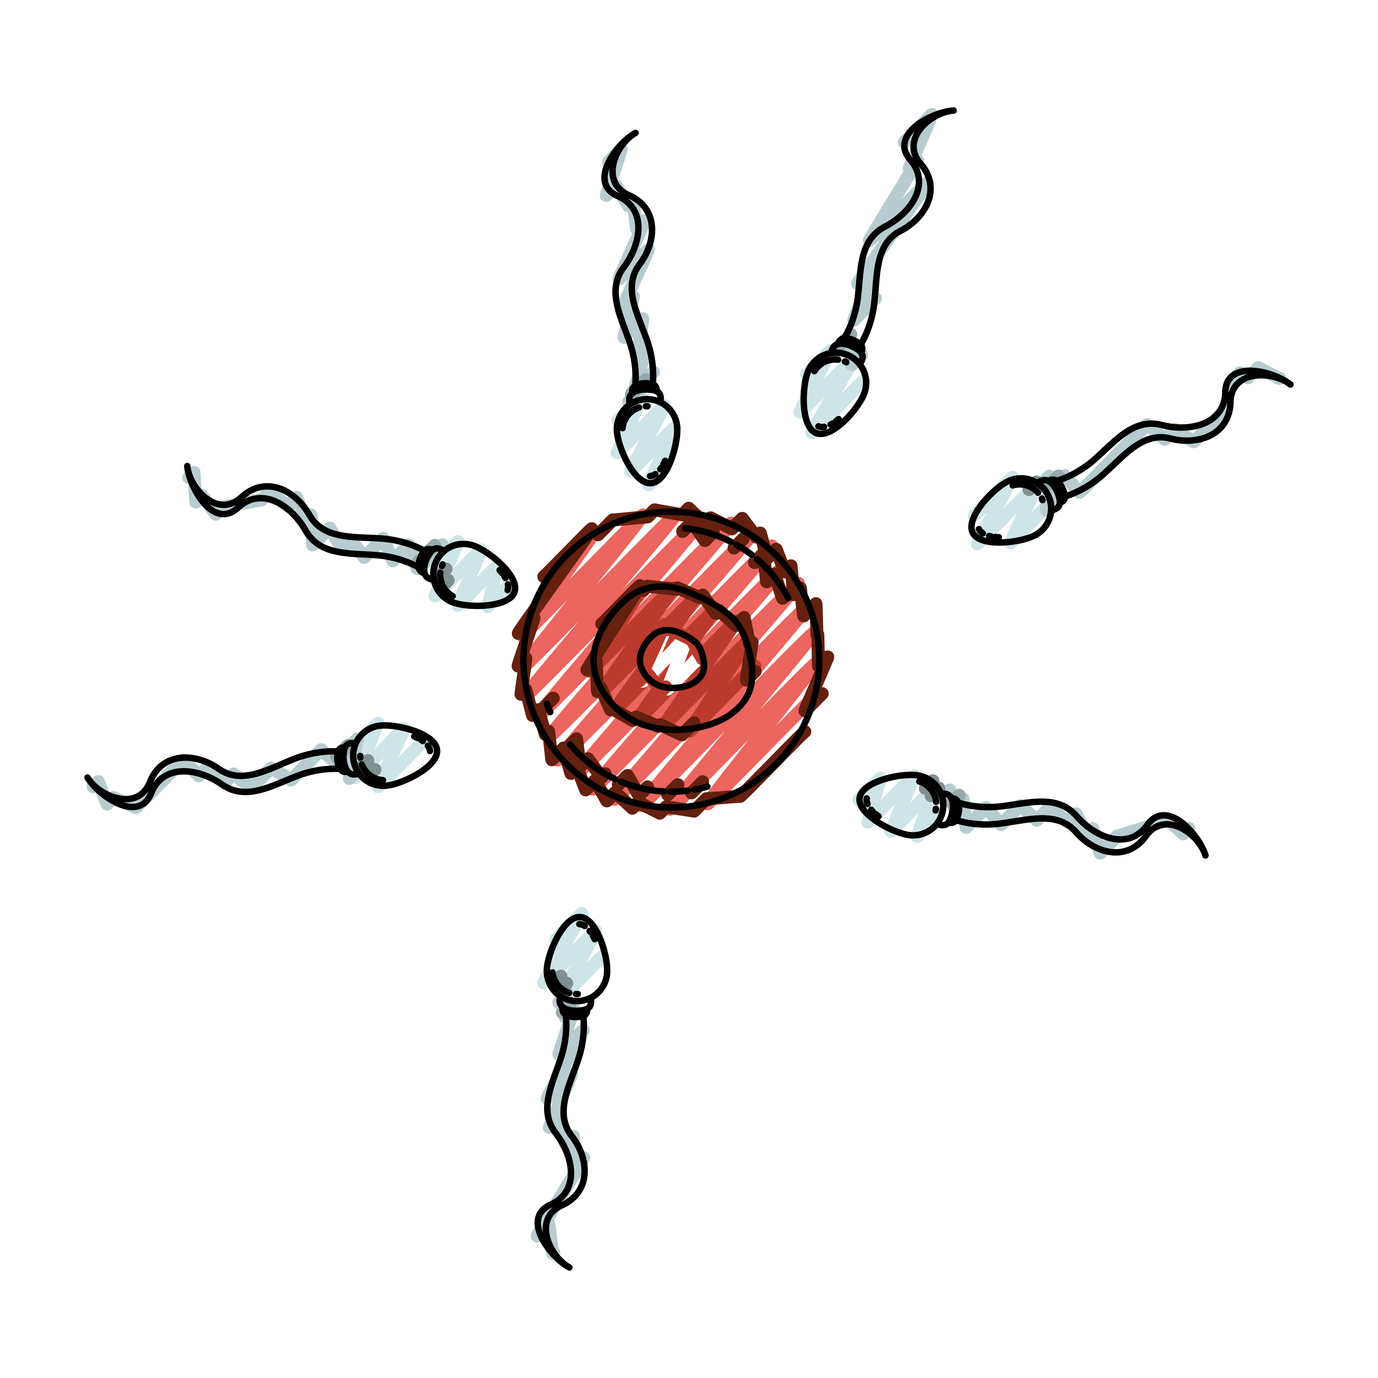 Un análisis del ADN, liberado en sangre y semen, permitirá determinar anomalías en los espermatozoides